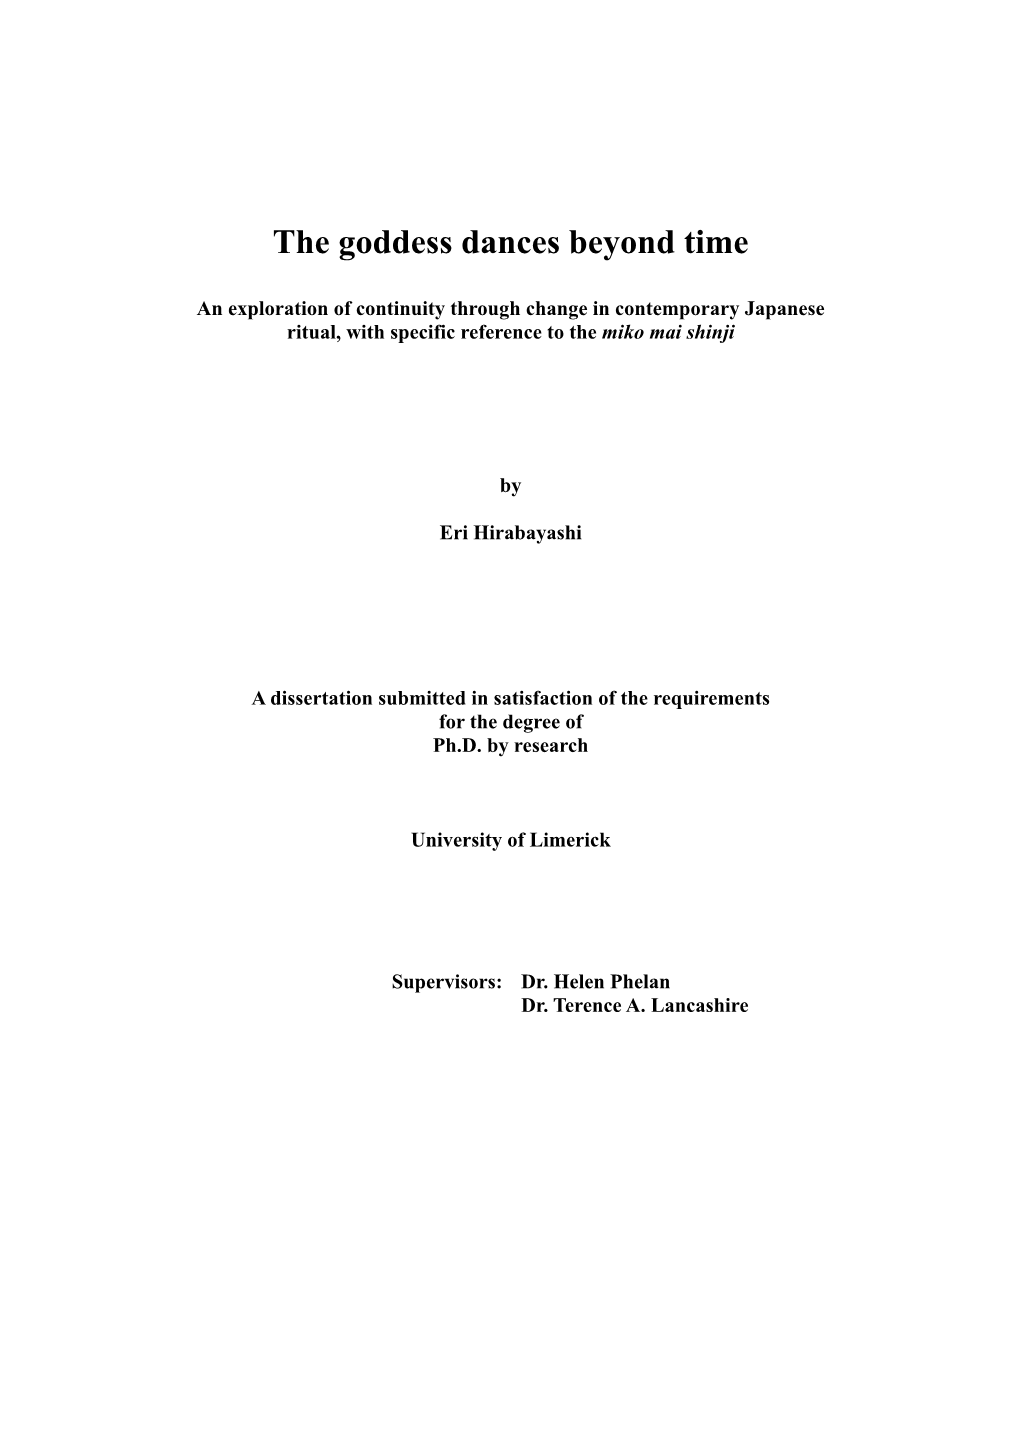 The Goddess Dances Beyond Time